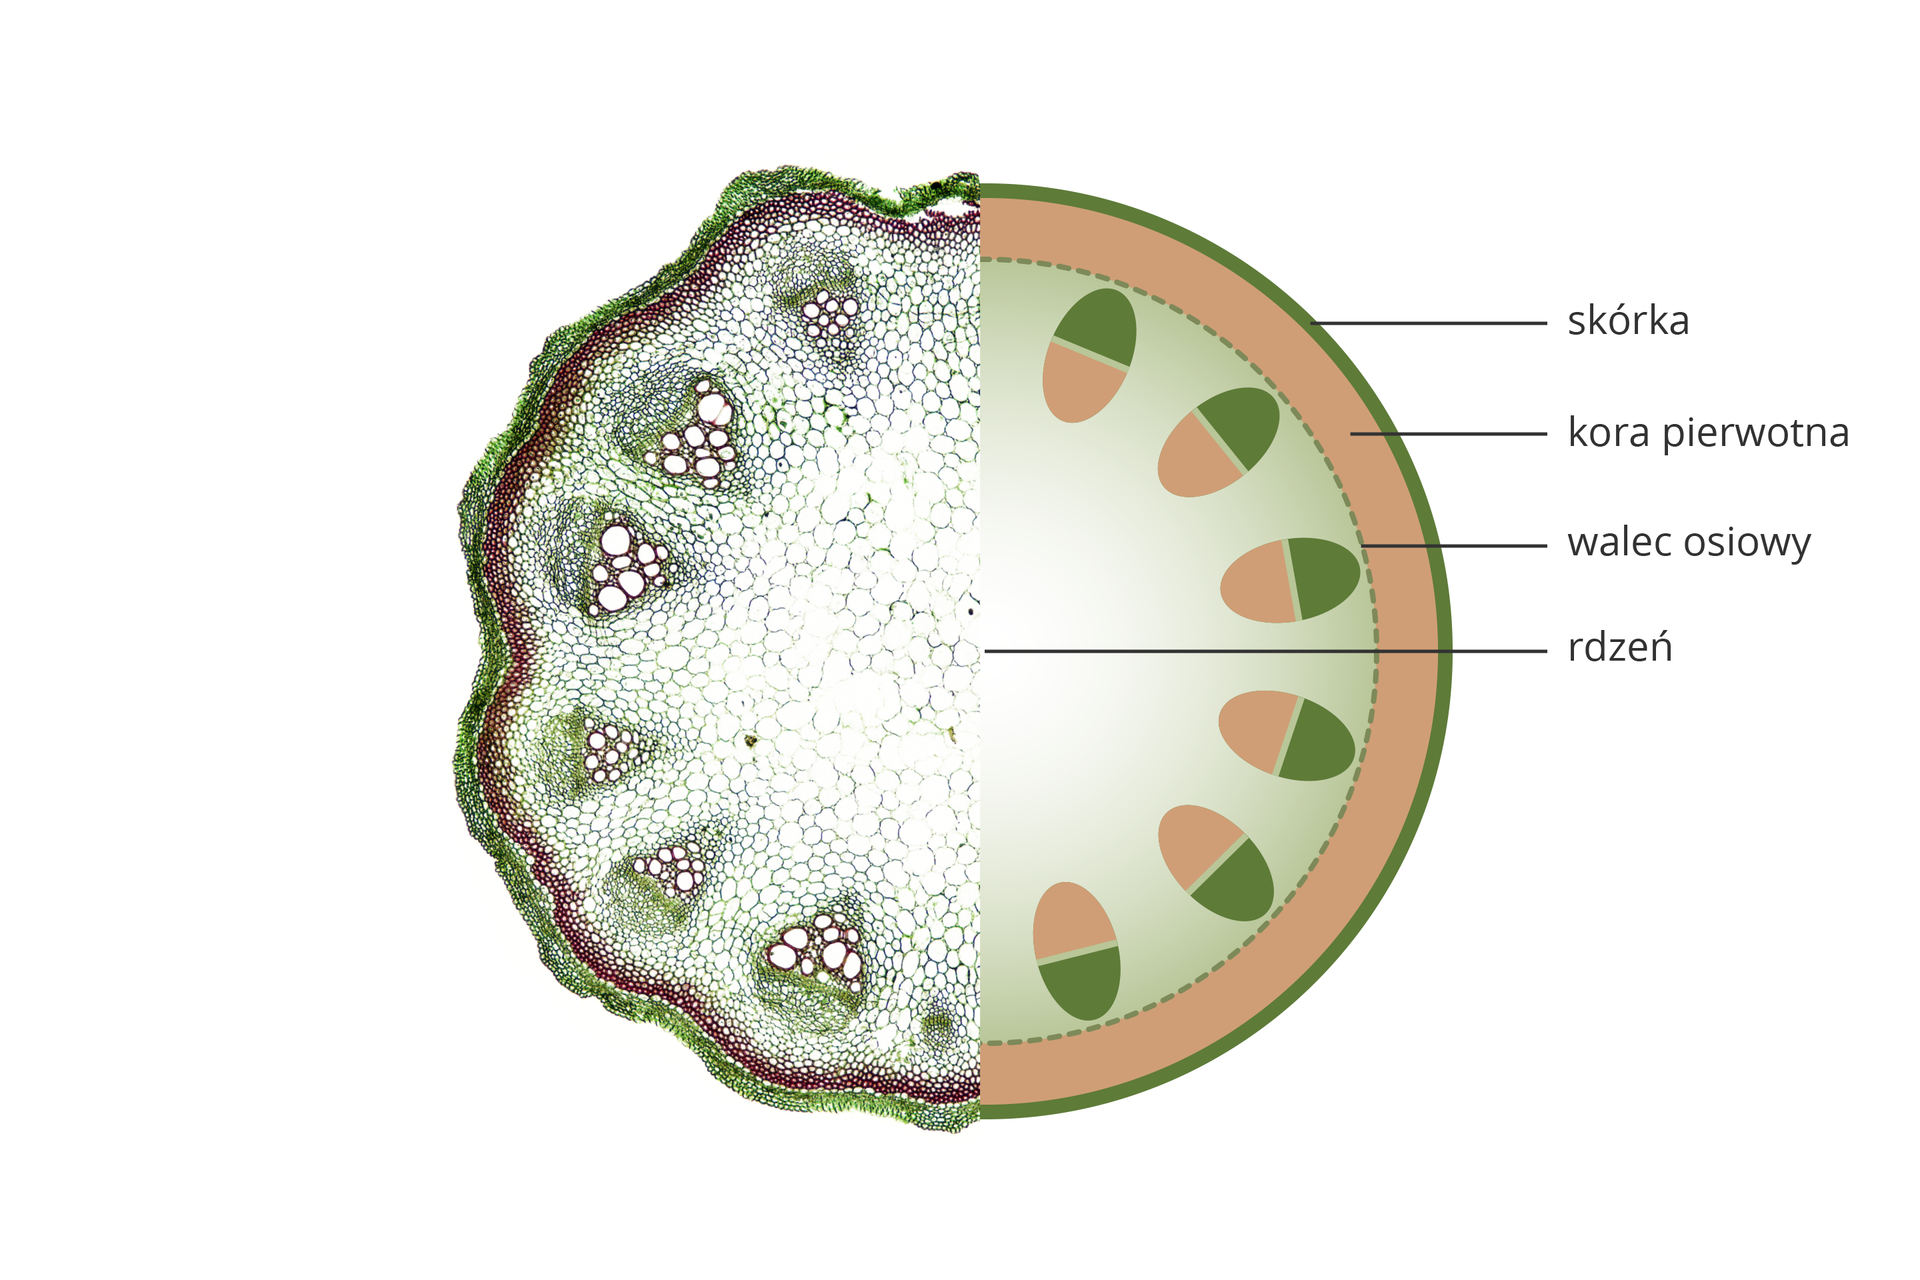 Ilustracja przedstawia rysunek schematyczny przekroju przez łodygę rośliny jednoliściennej. Tkanki oznaczono różnymi kolorami i podpisano.